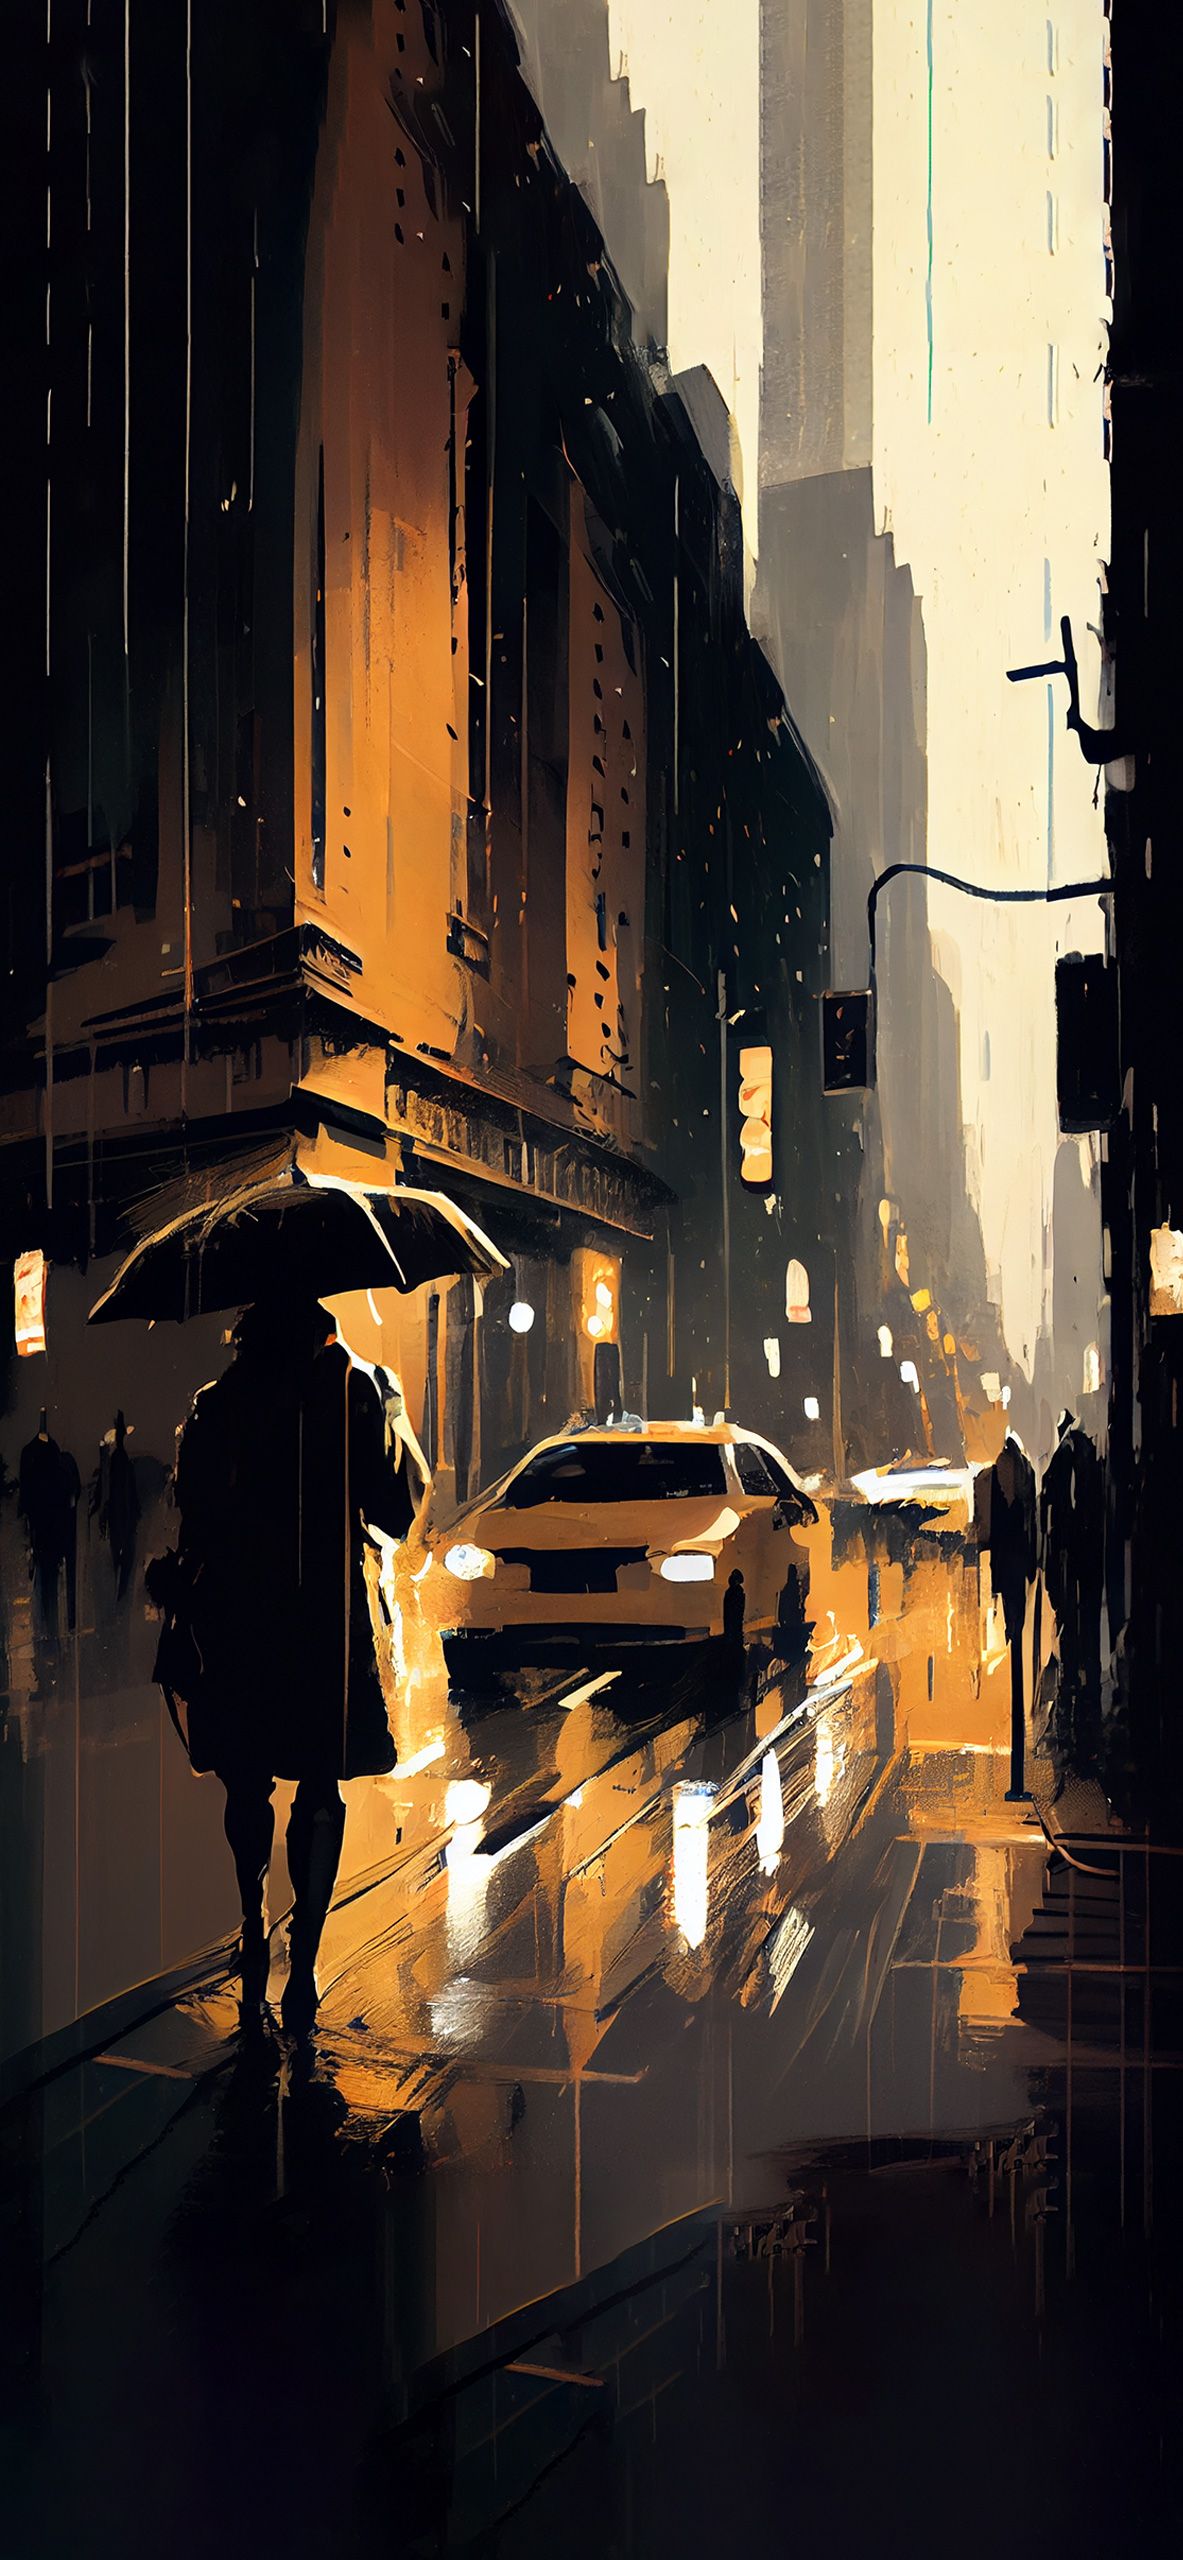 Rainy night in the city - Rain